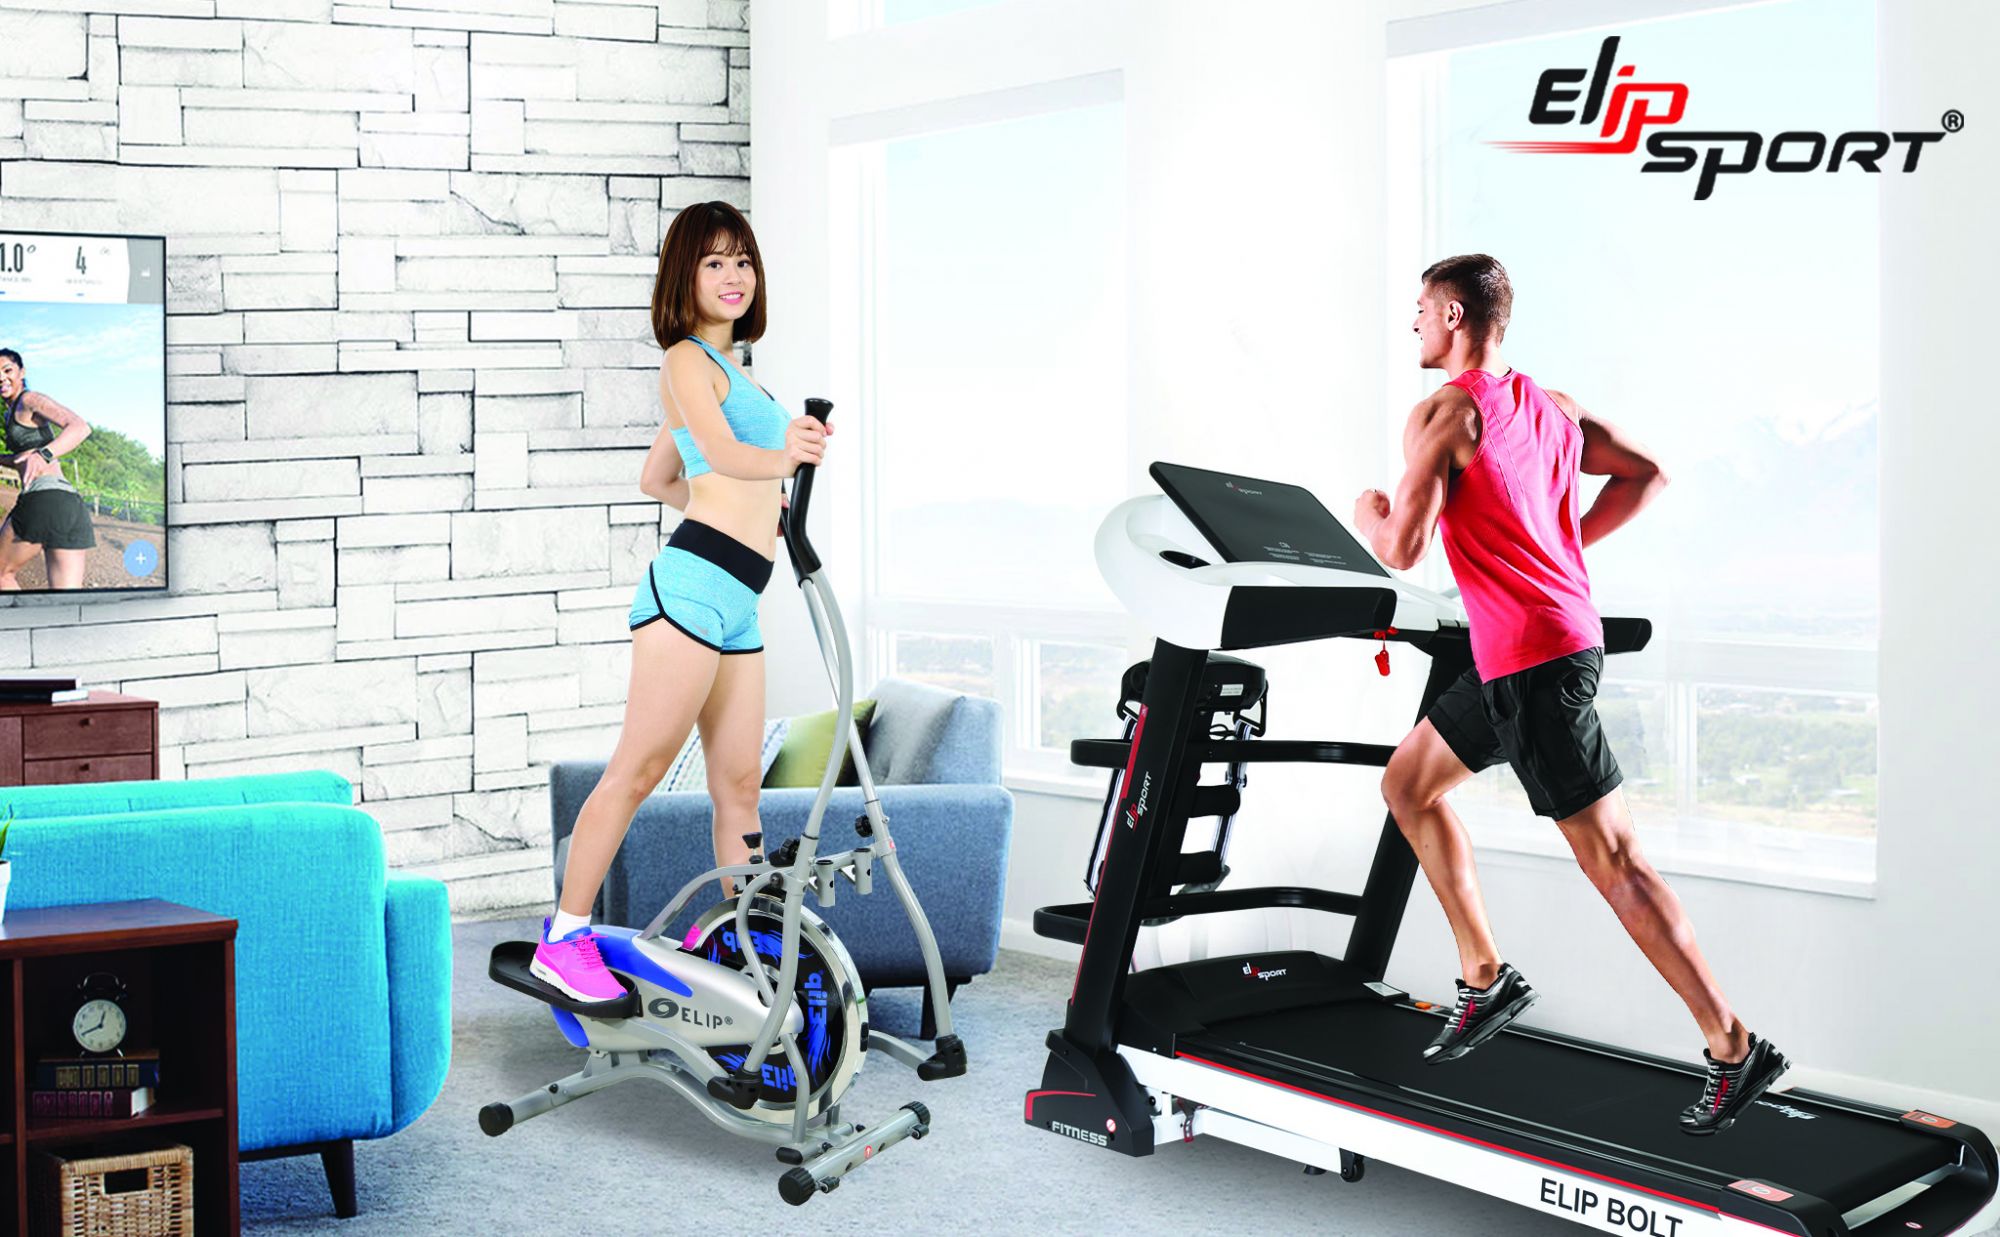 chạy bộ hay tập gym giảm cân tốt hơn